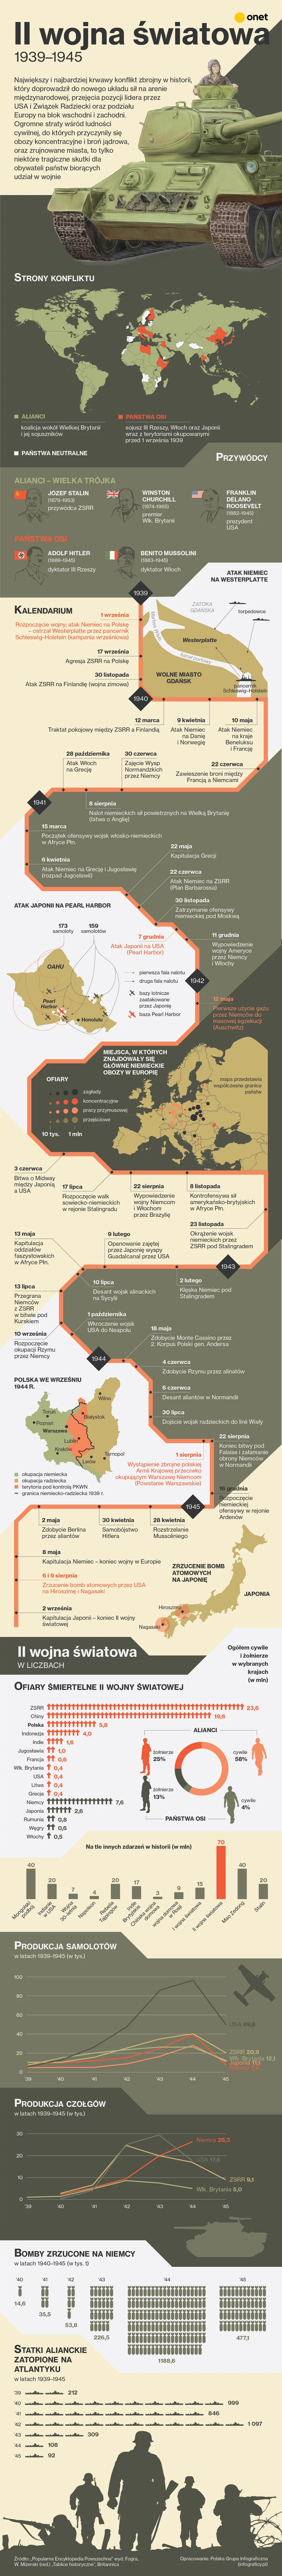 II wojna światowa na infografice